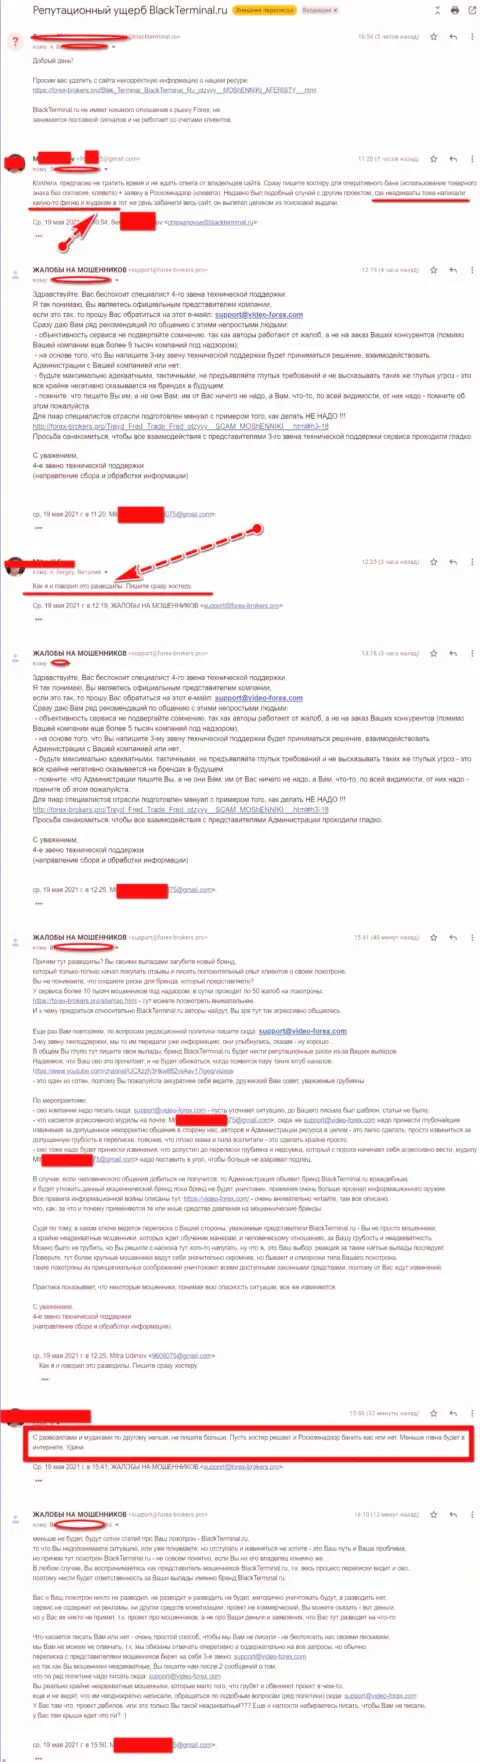 Онлайн переписка Администрации сайта, с отзывами об BlackTerminal, с некими представителями этого противозаконно действующего онлайн-сервиса